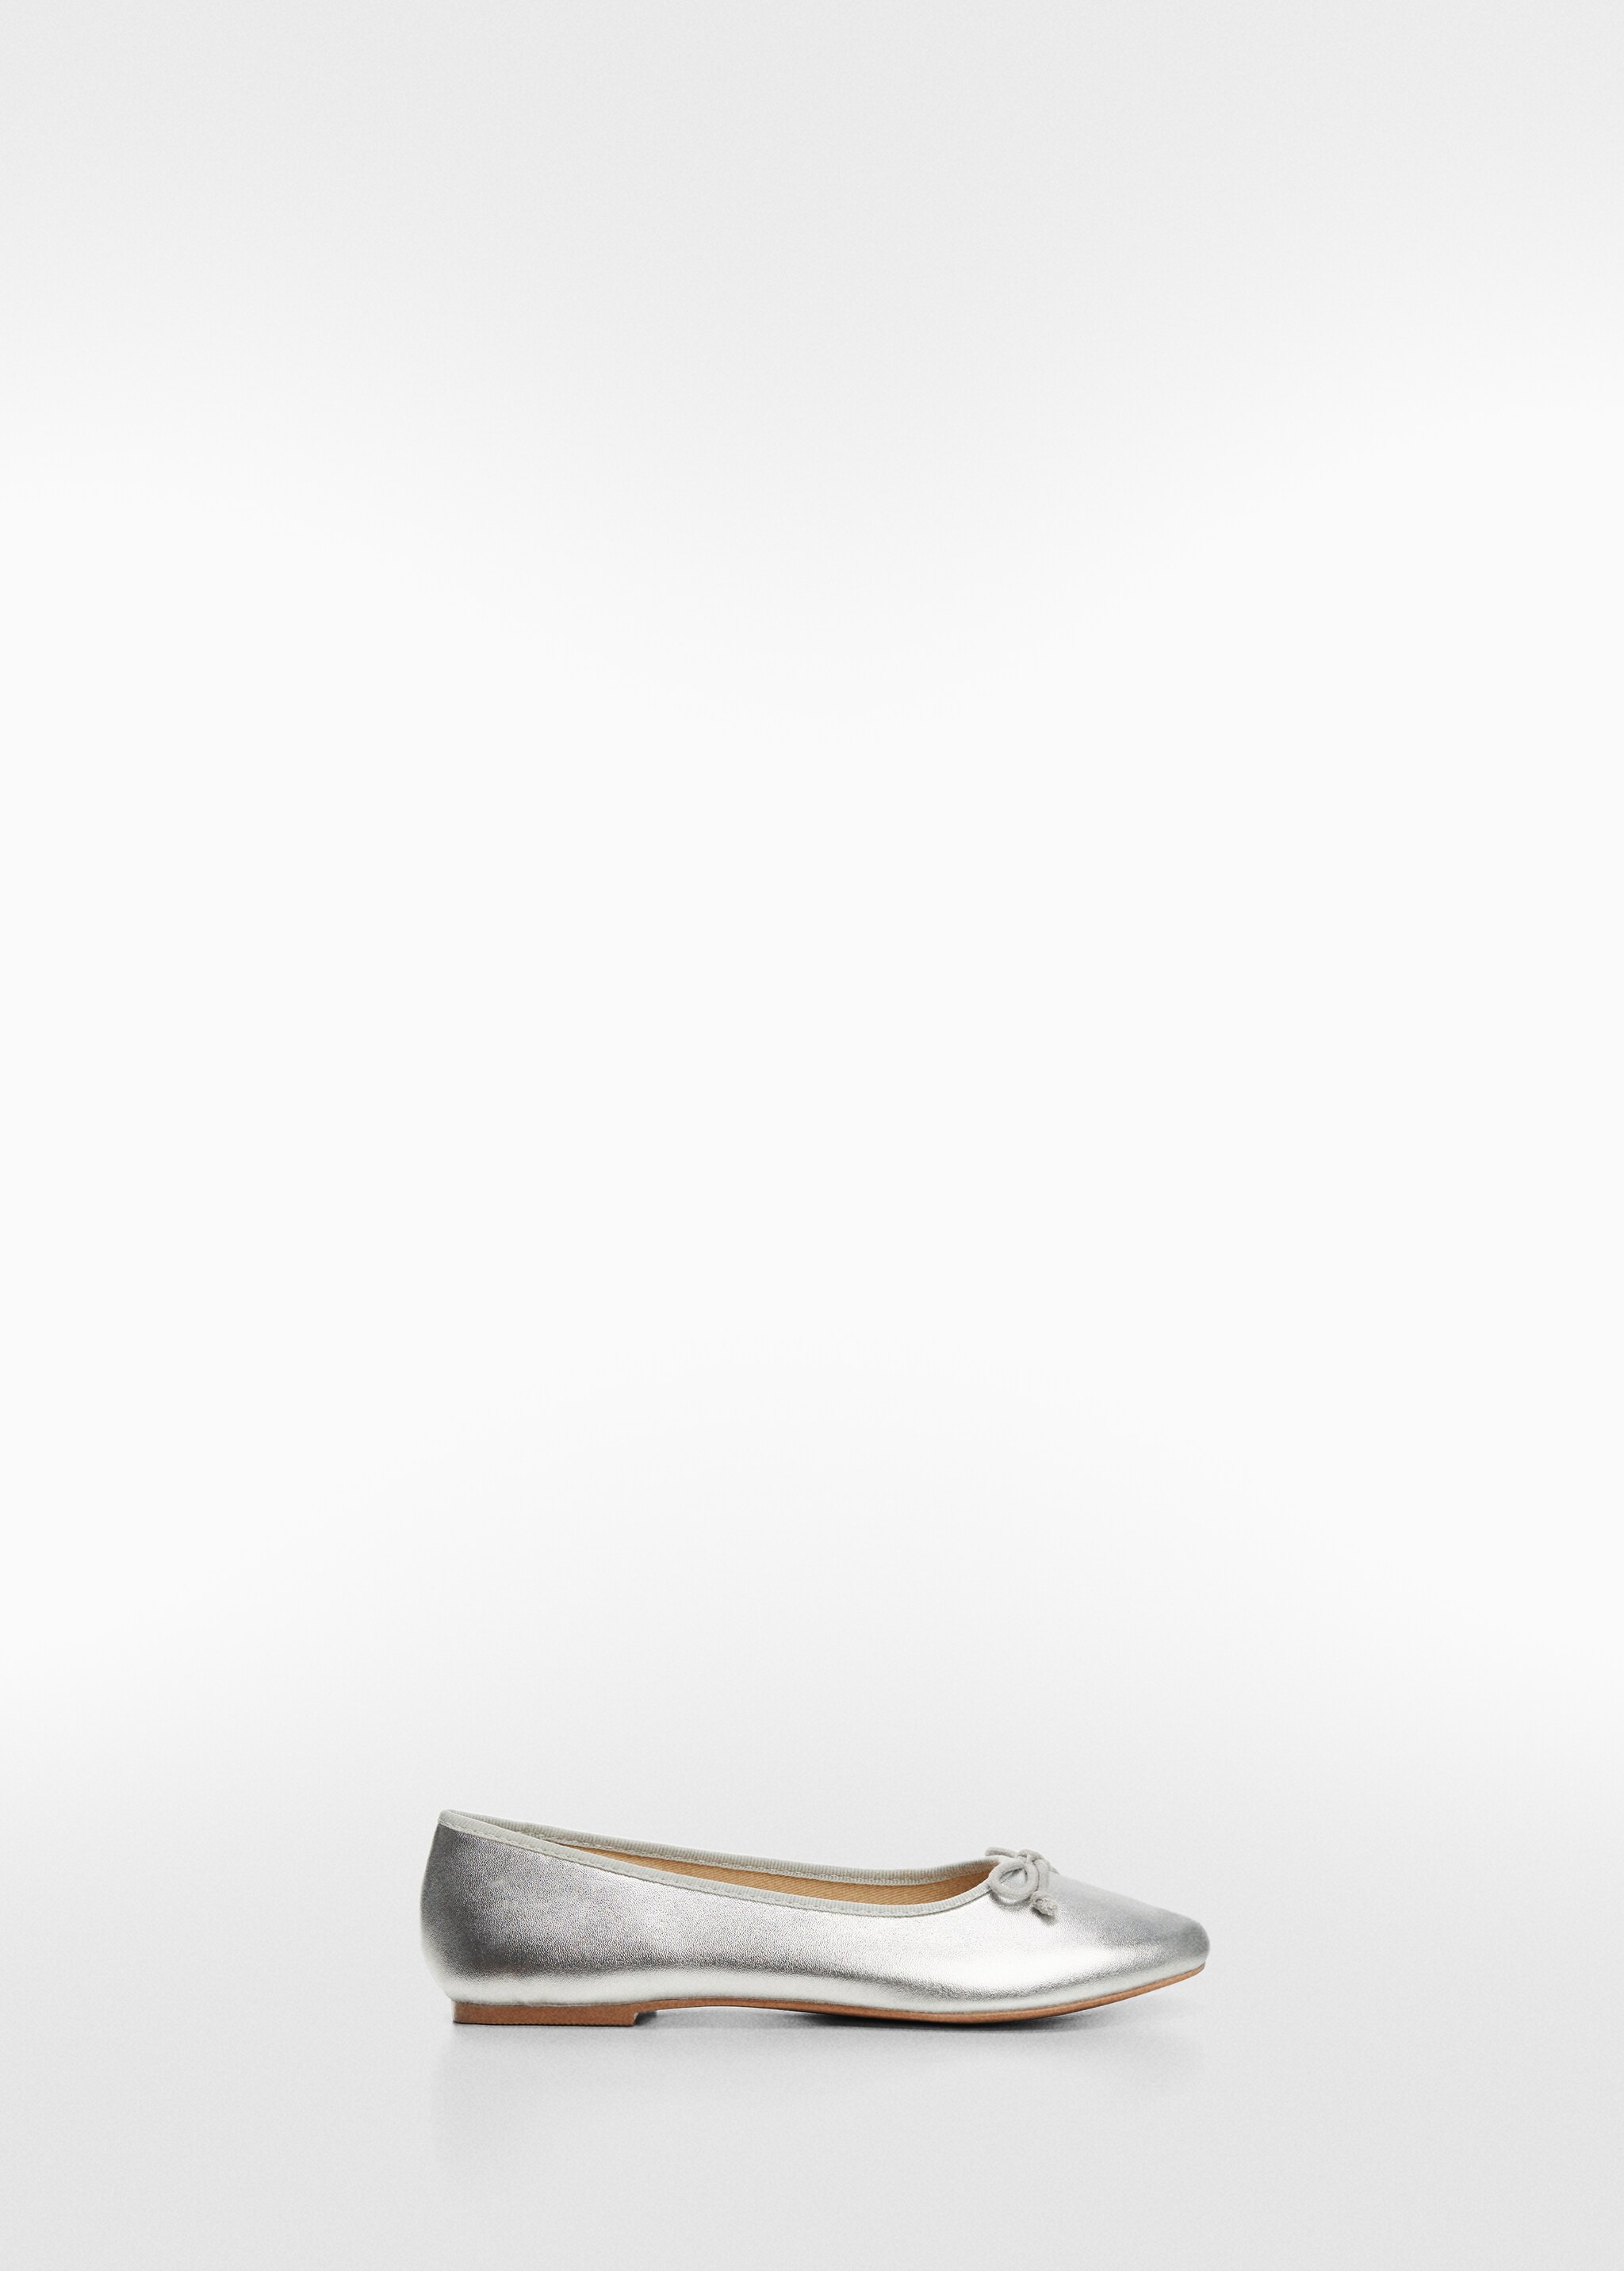 حذاء باليرينا / راقصة باليه - منتج دون نموذج